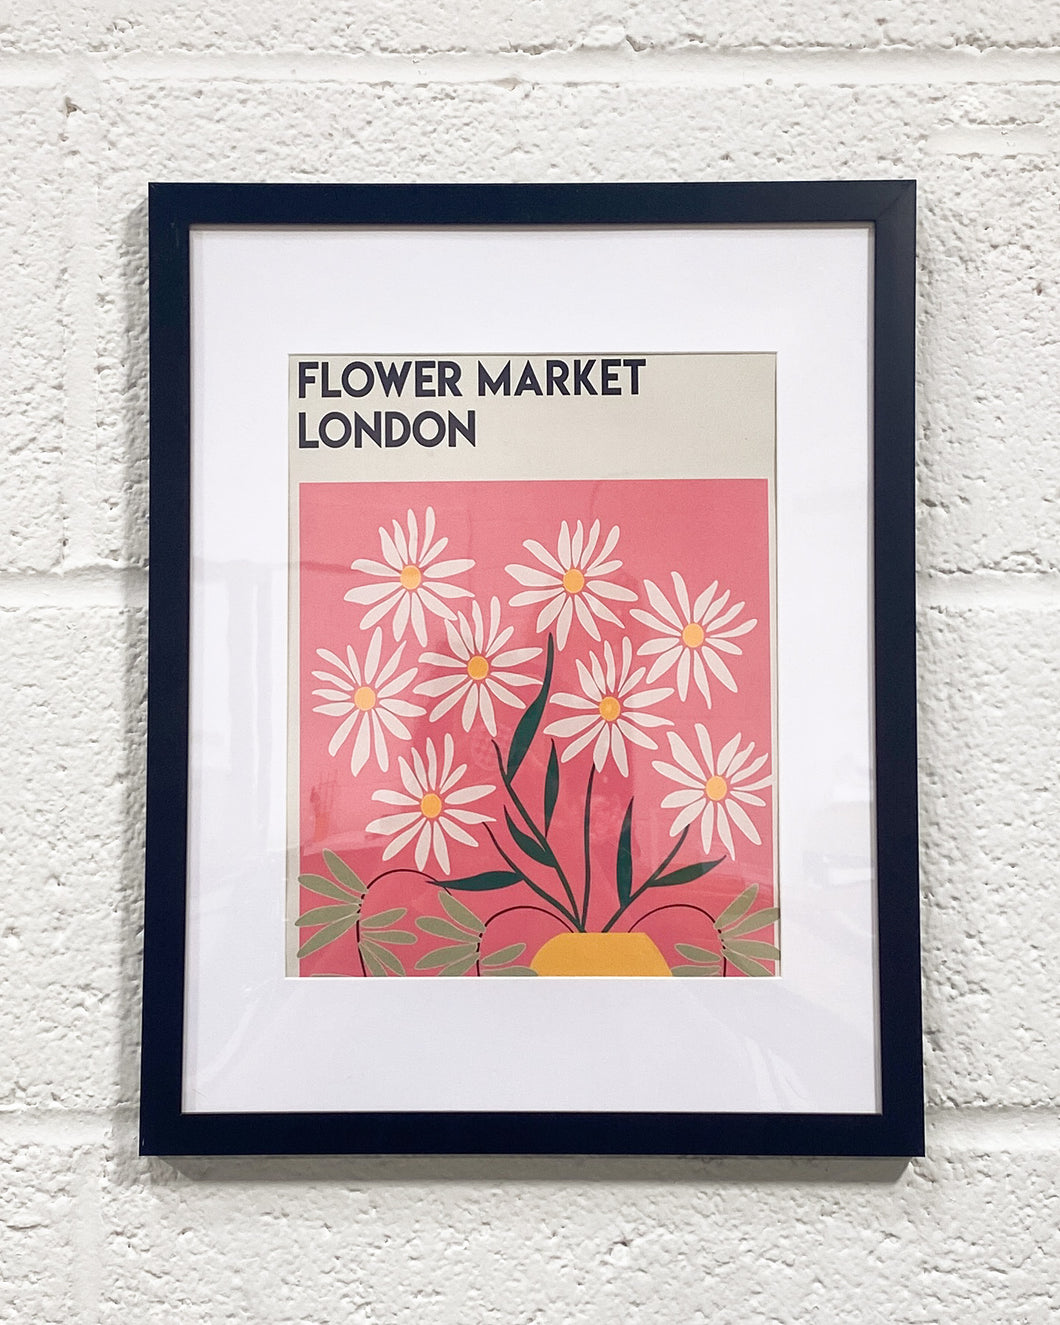 Flower Market London in Black Frame